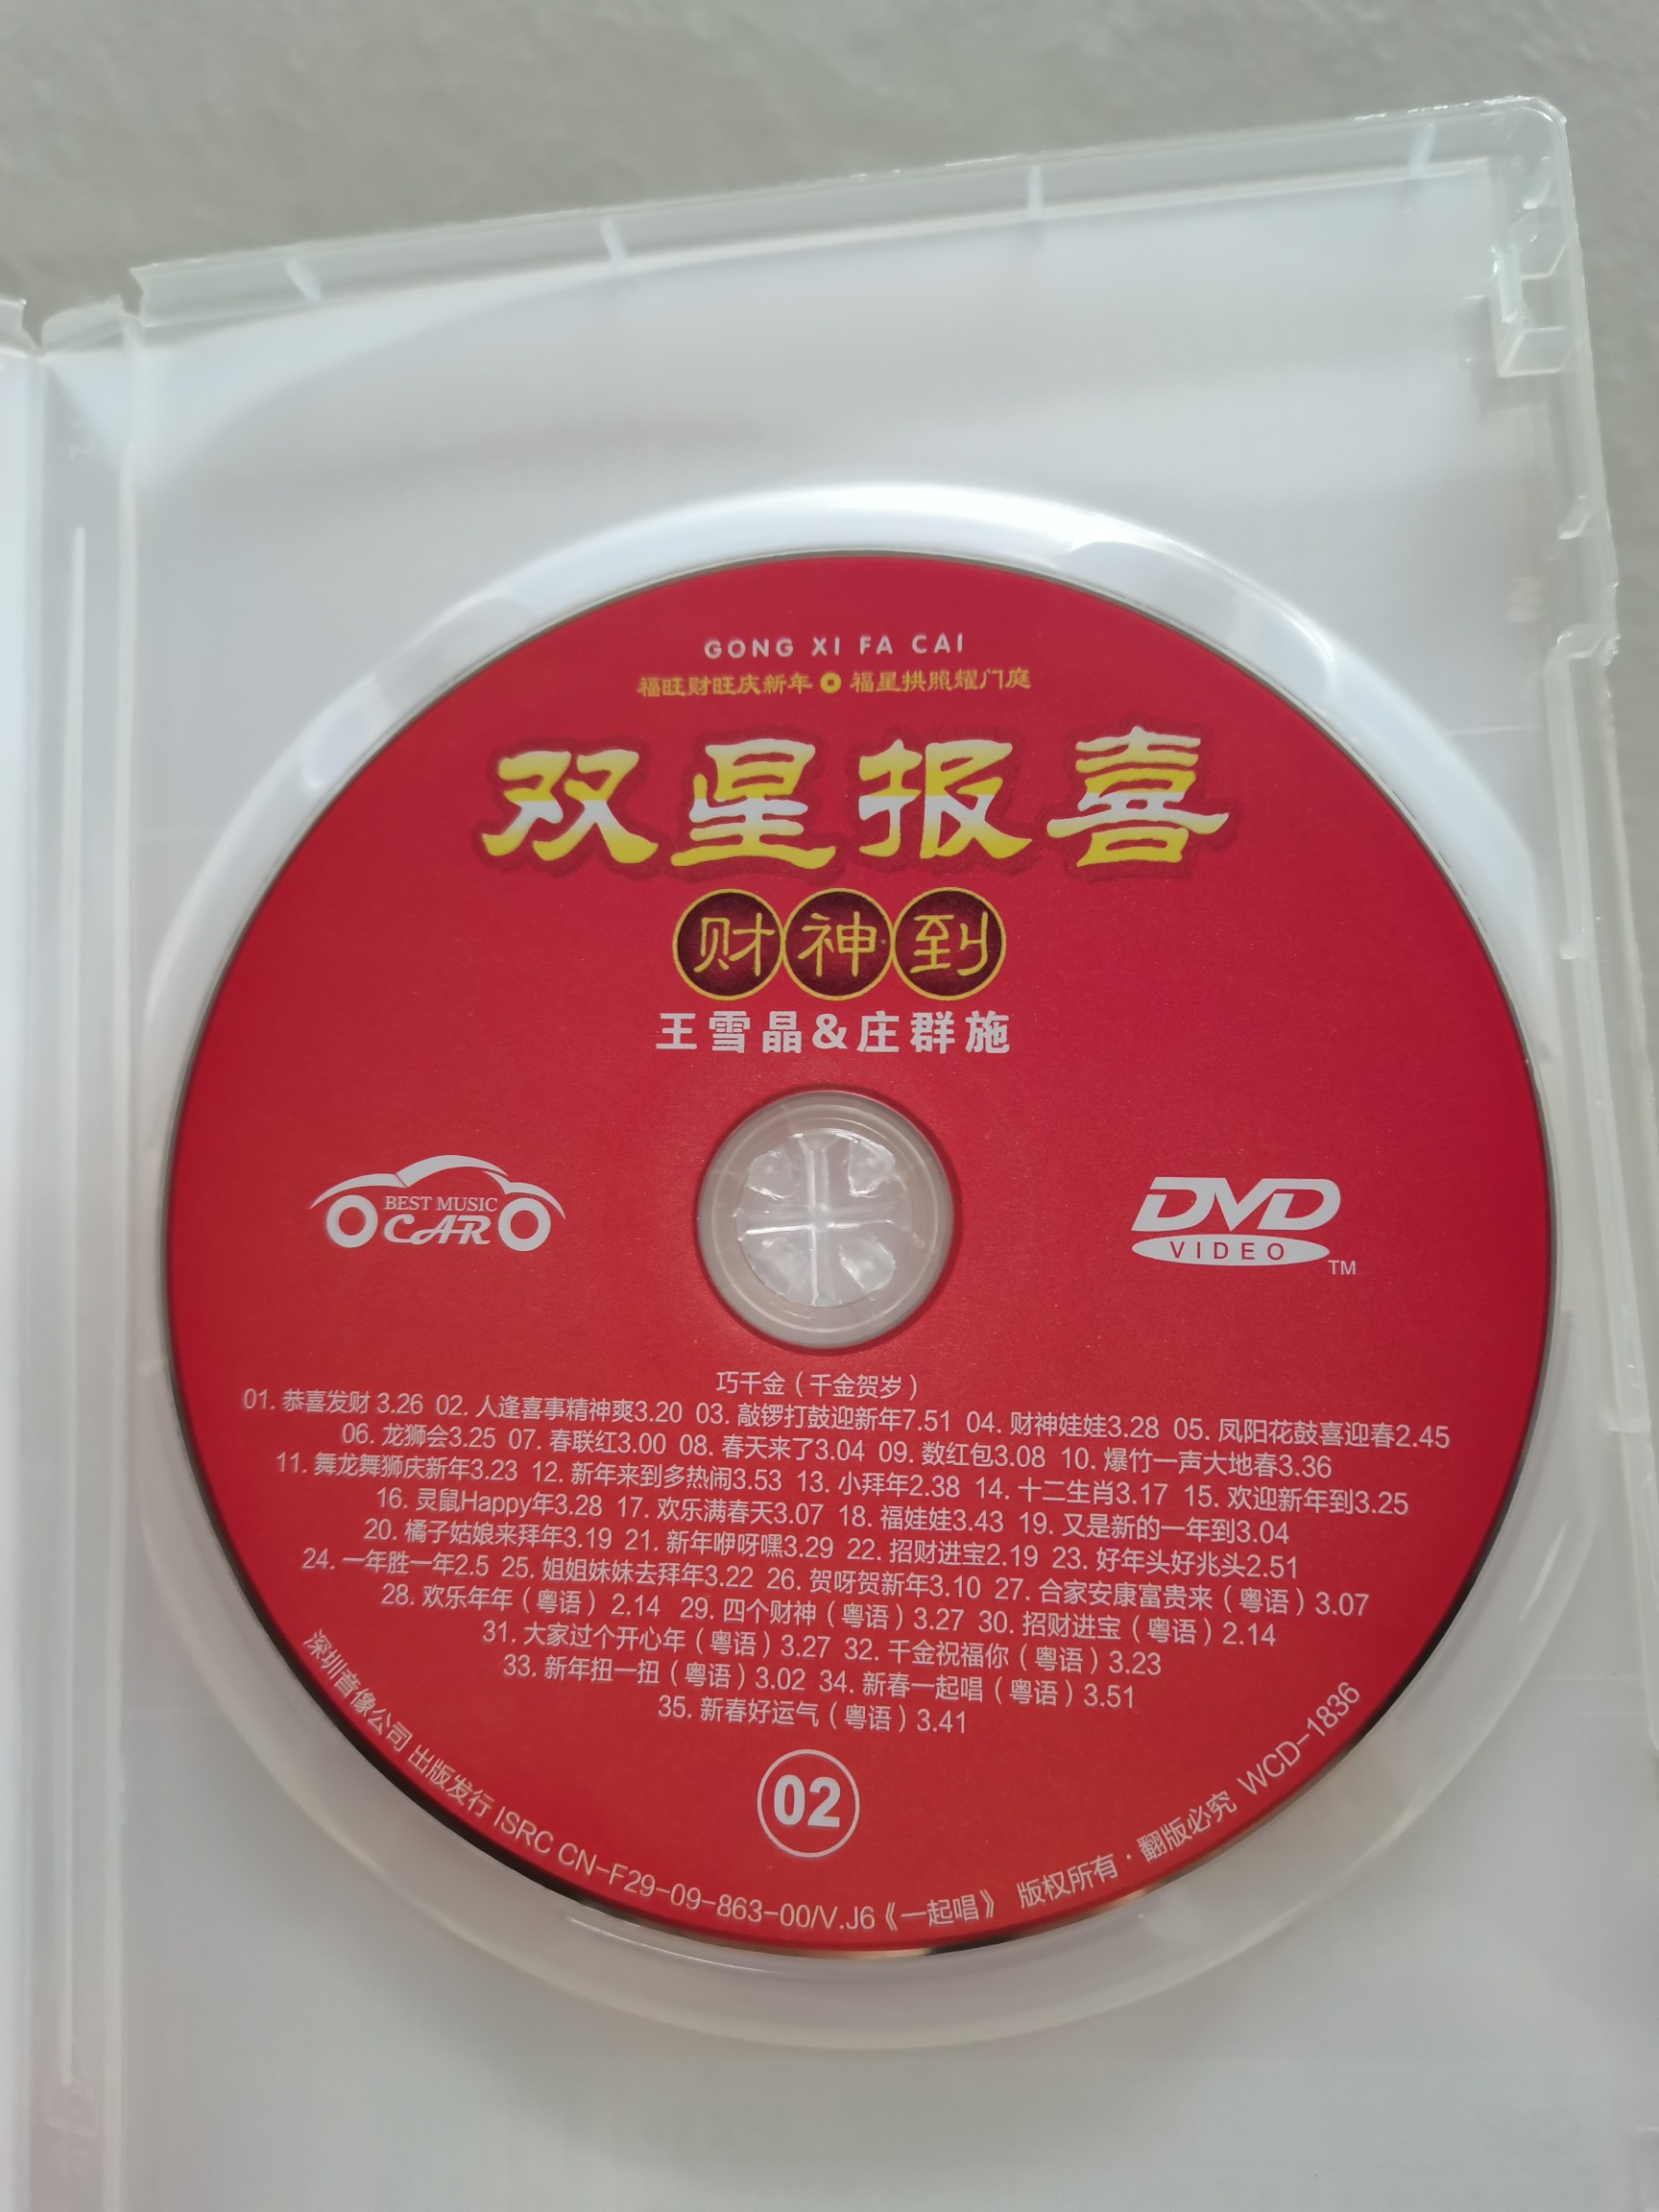 正版双星报喜dvd碟片王雪晶庄群施新年歌曲贺年音乐高清家用光碟- Taobao